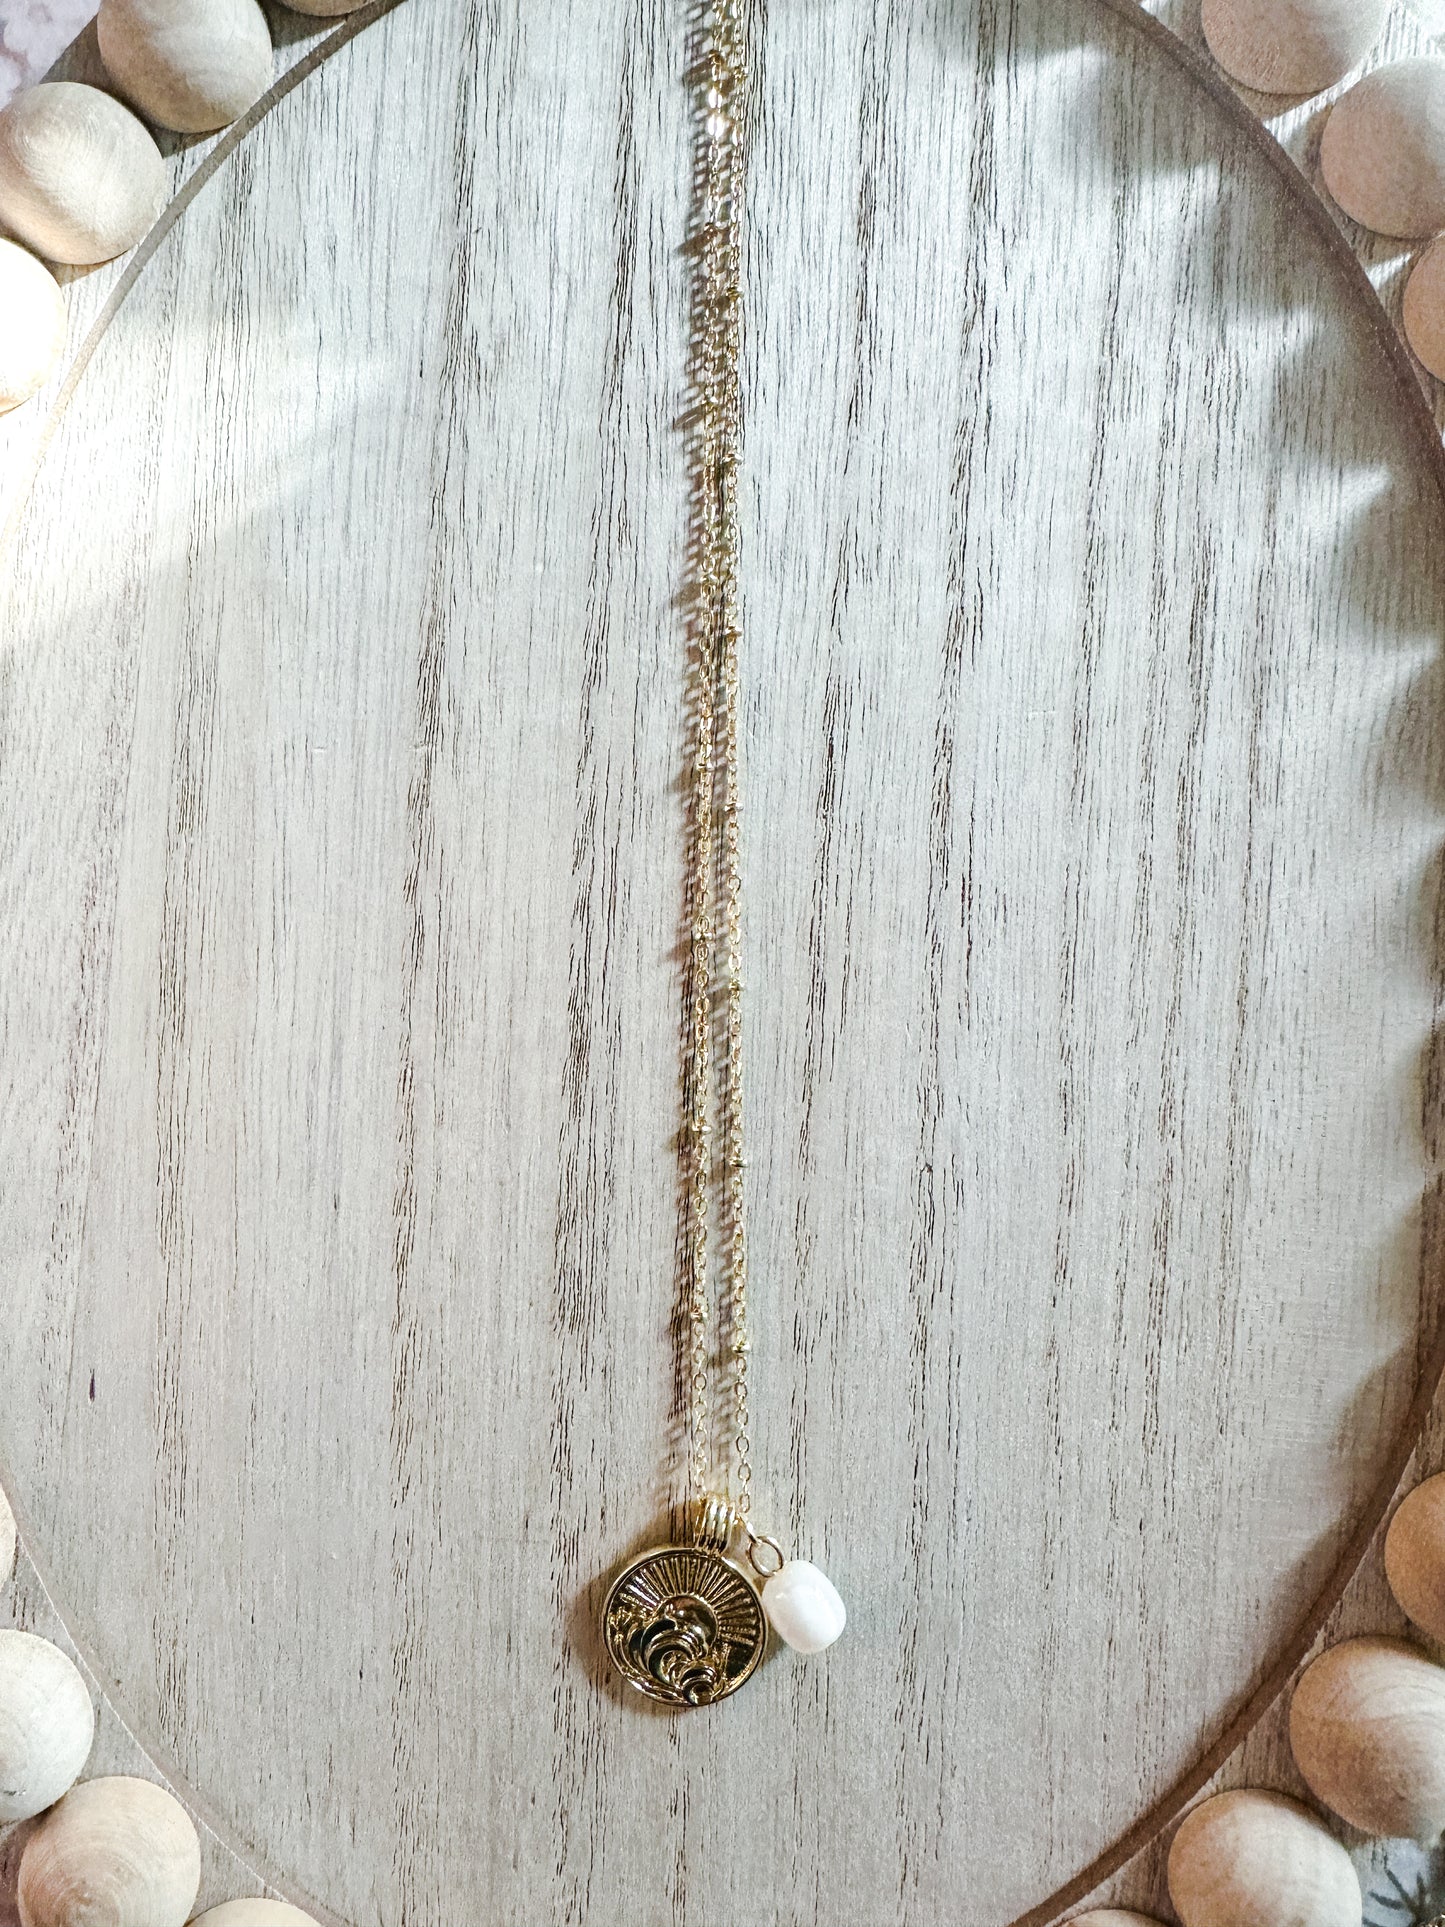 Ocean wave necklace